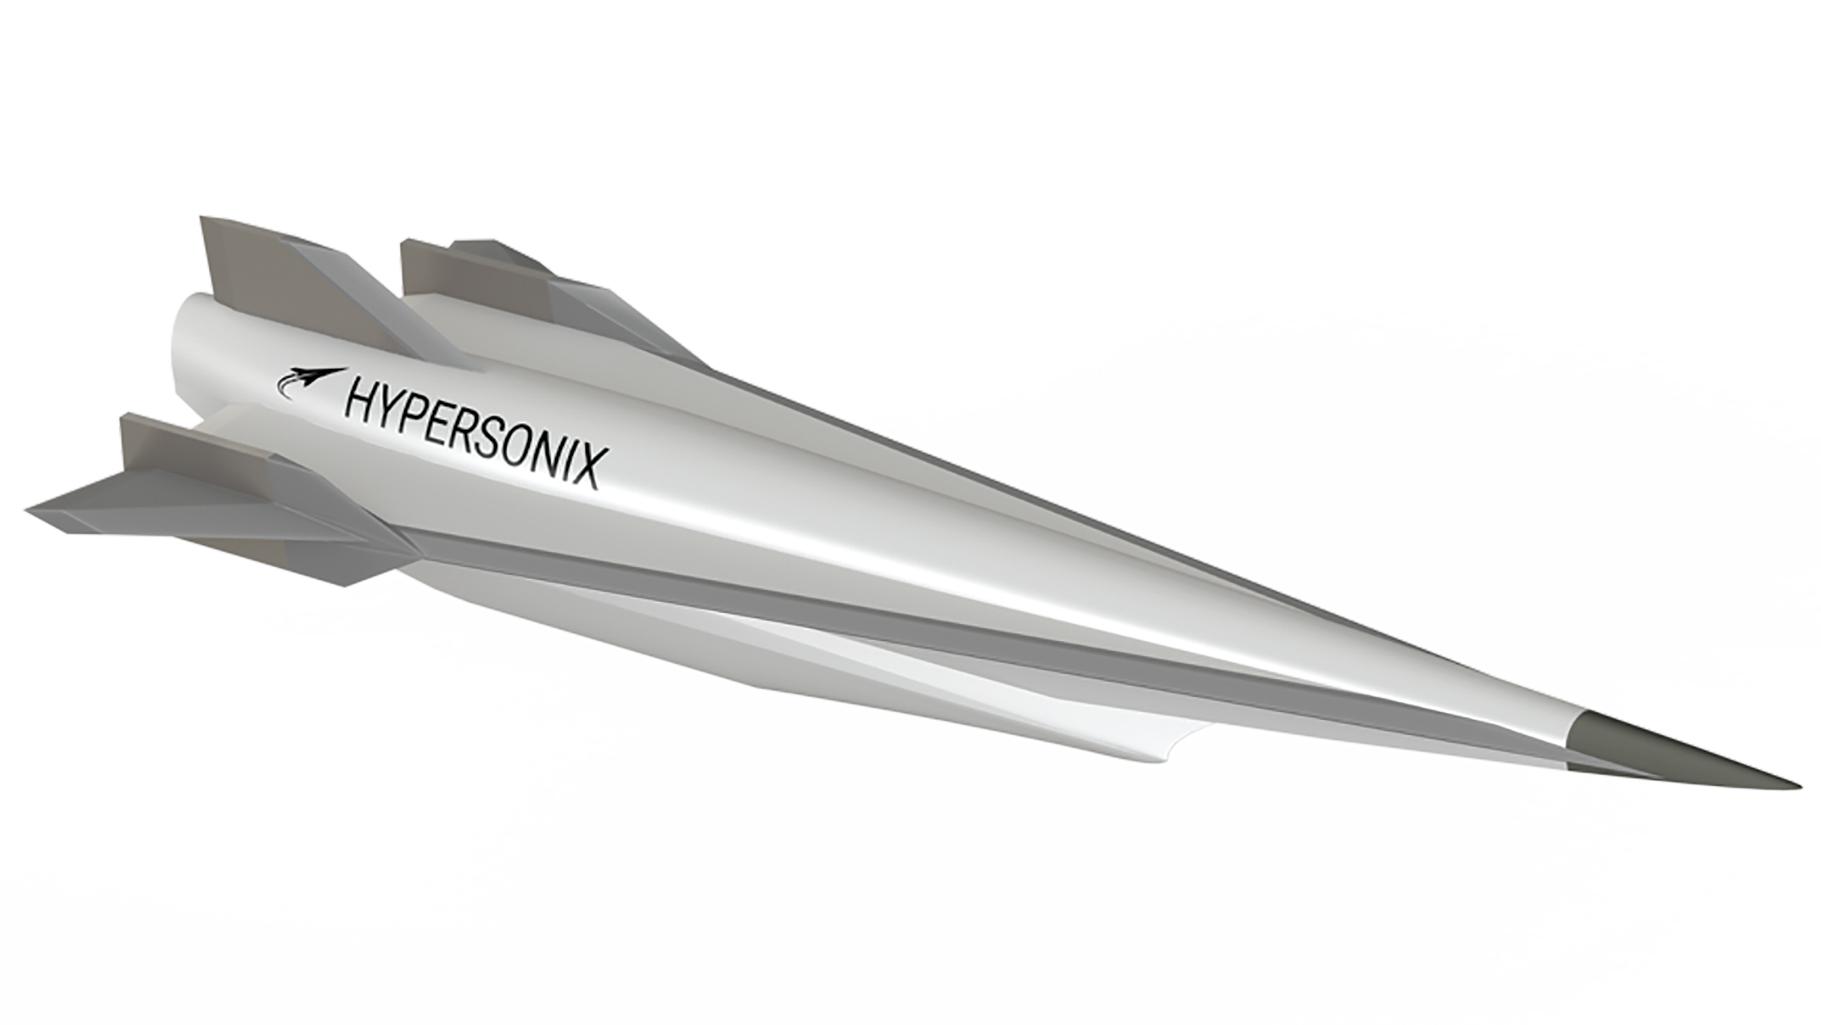 Hypersonix aircraft